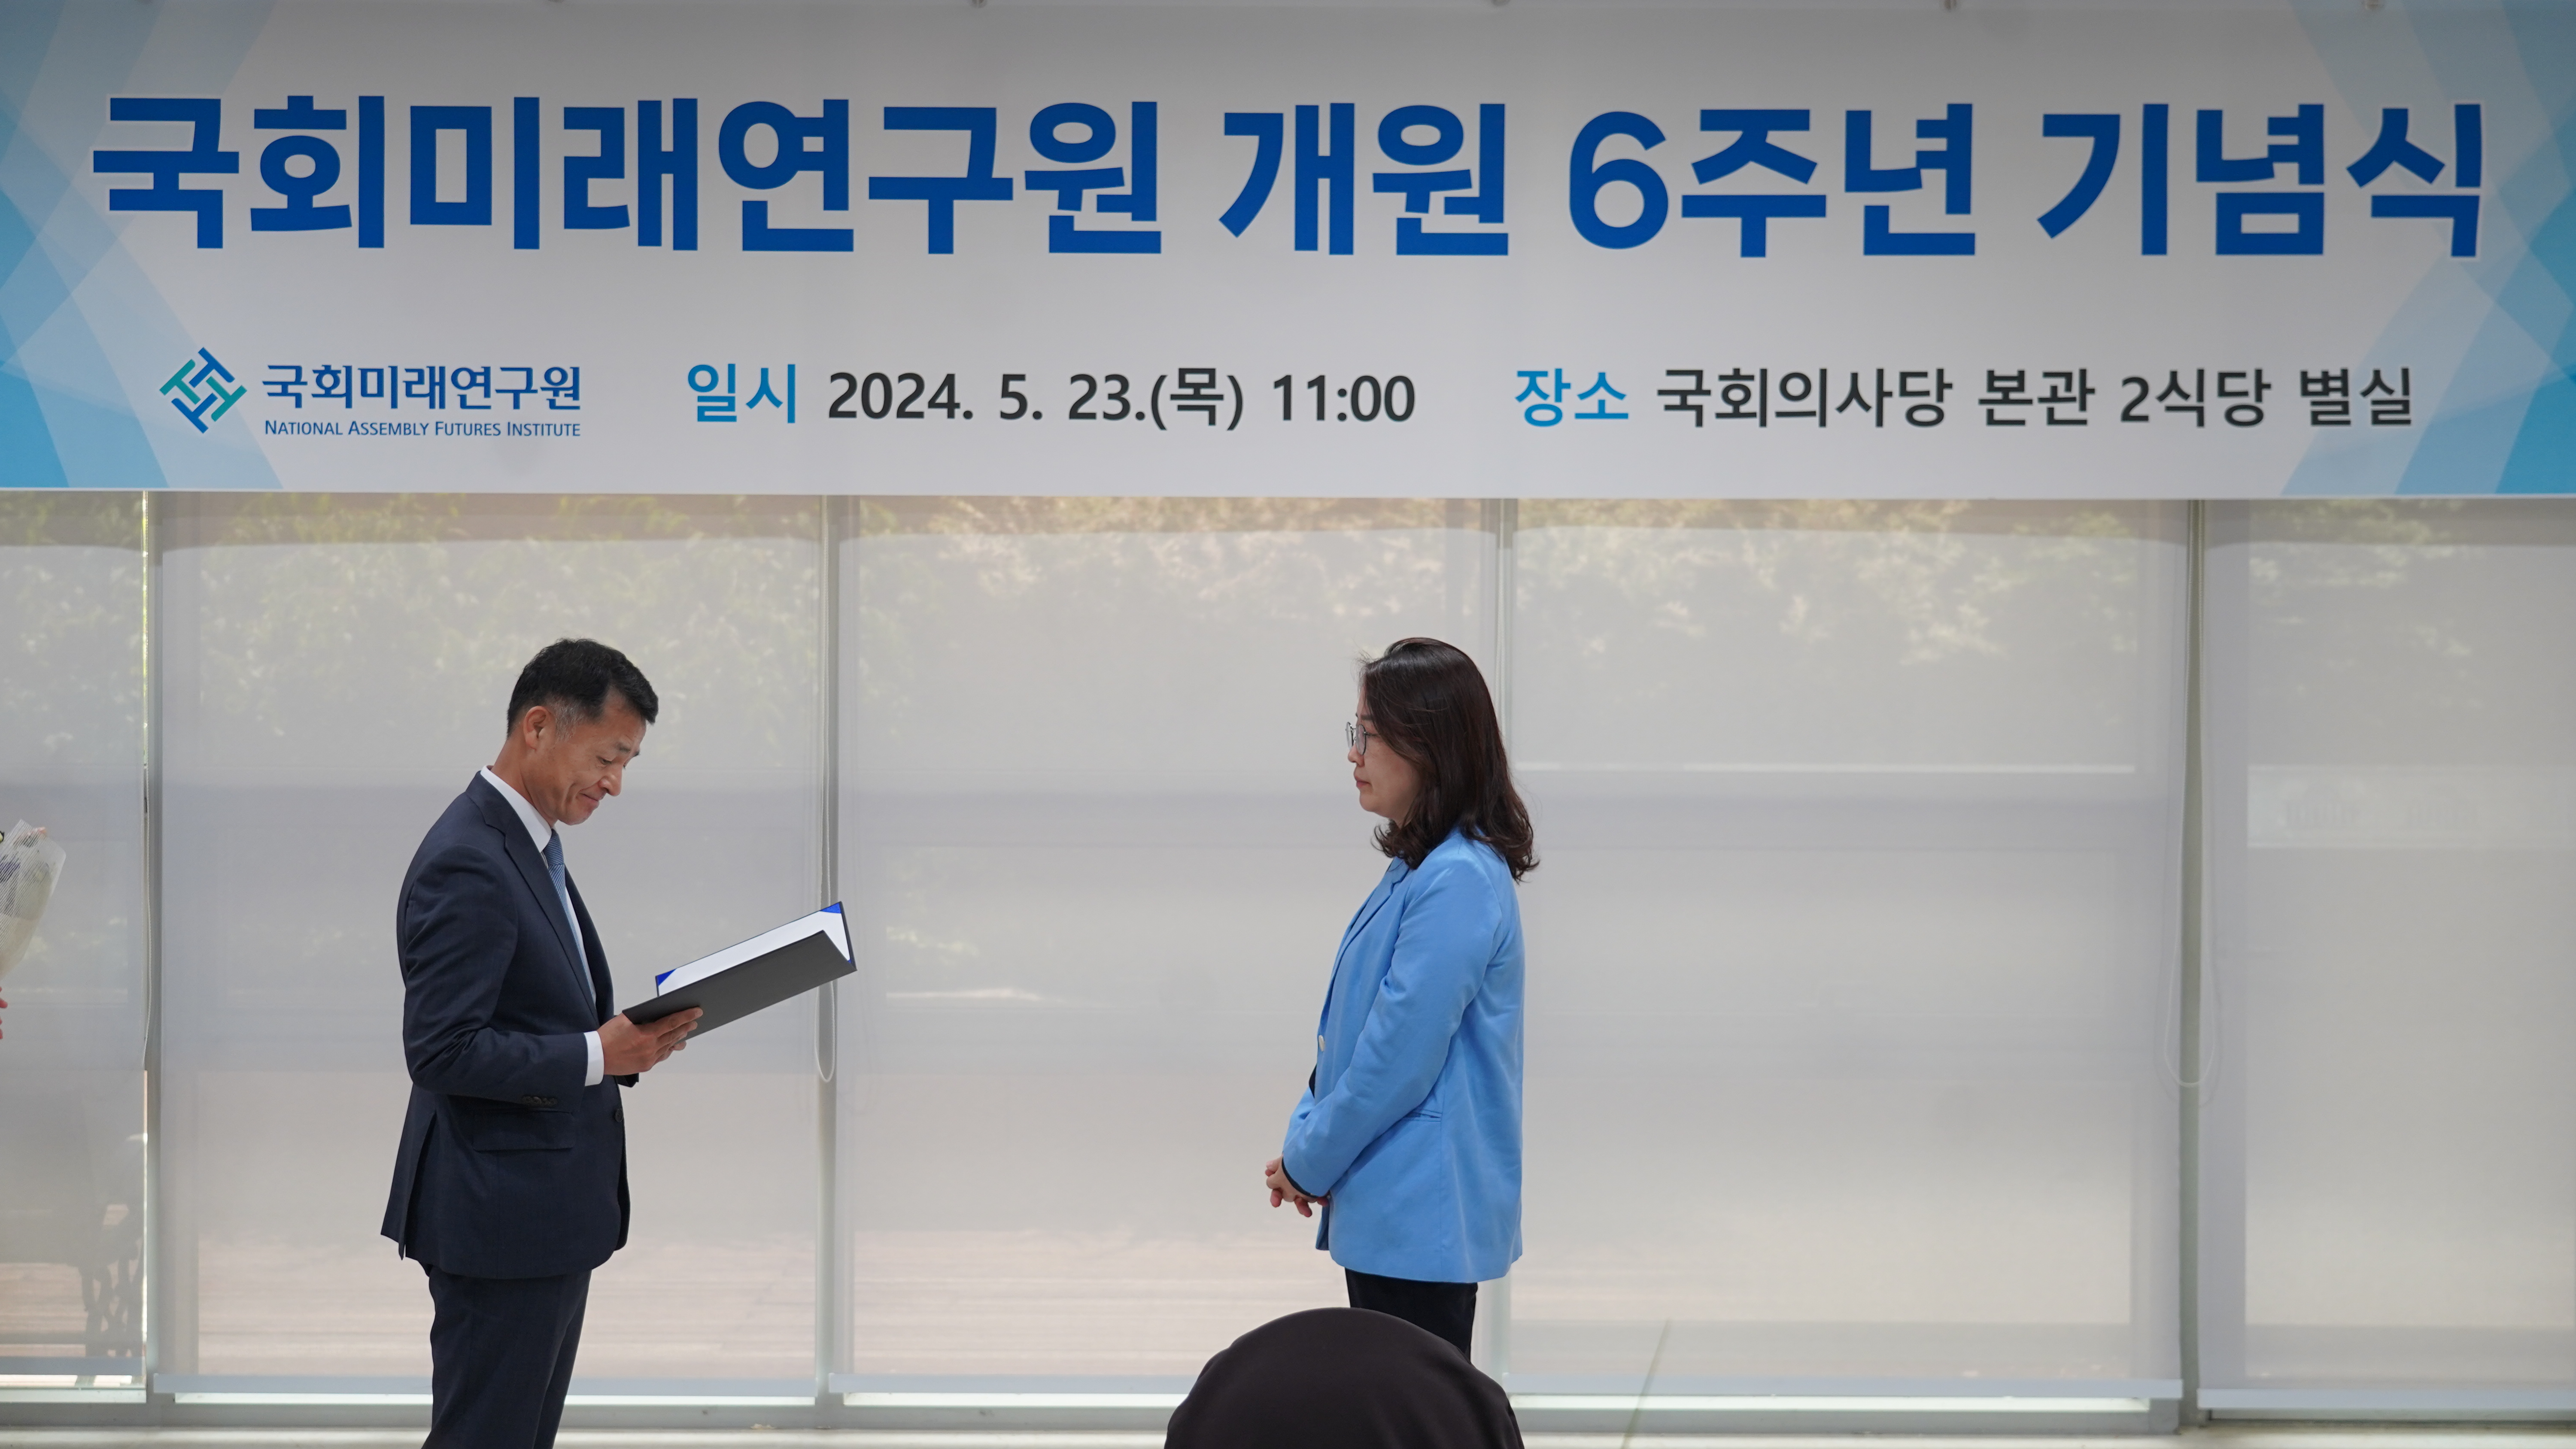 [05.23] 국회미래연구원, 개원 6주년 기념식 개최7